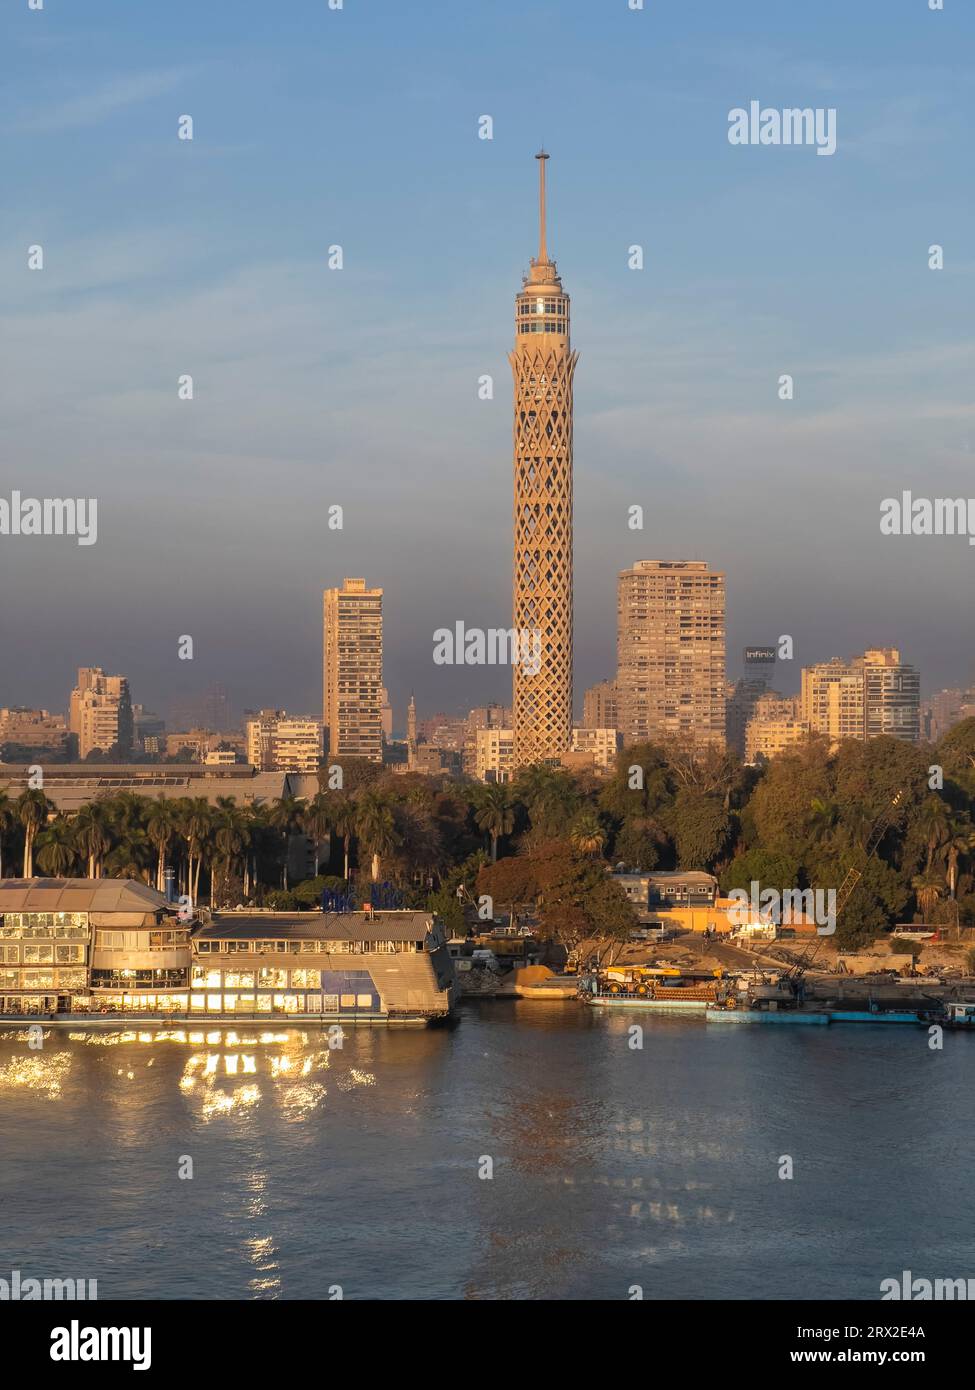 Tour du Caire, la plus haute structure en Egypte et en Afrique du Nord, s'élevant à 187 mètres, Nil, le Caire, Egypte, Afrique du Nord, Afrique Banque D'Images